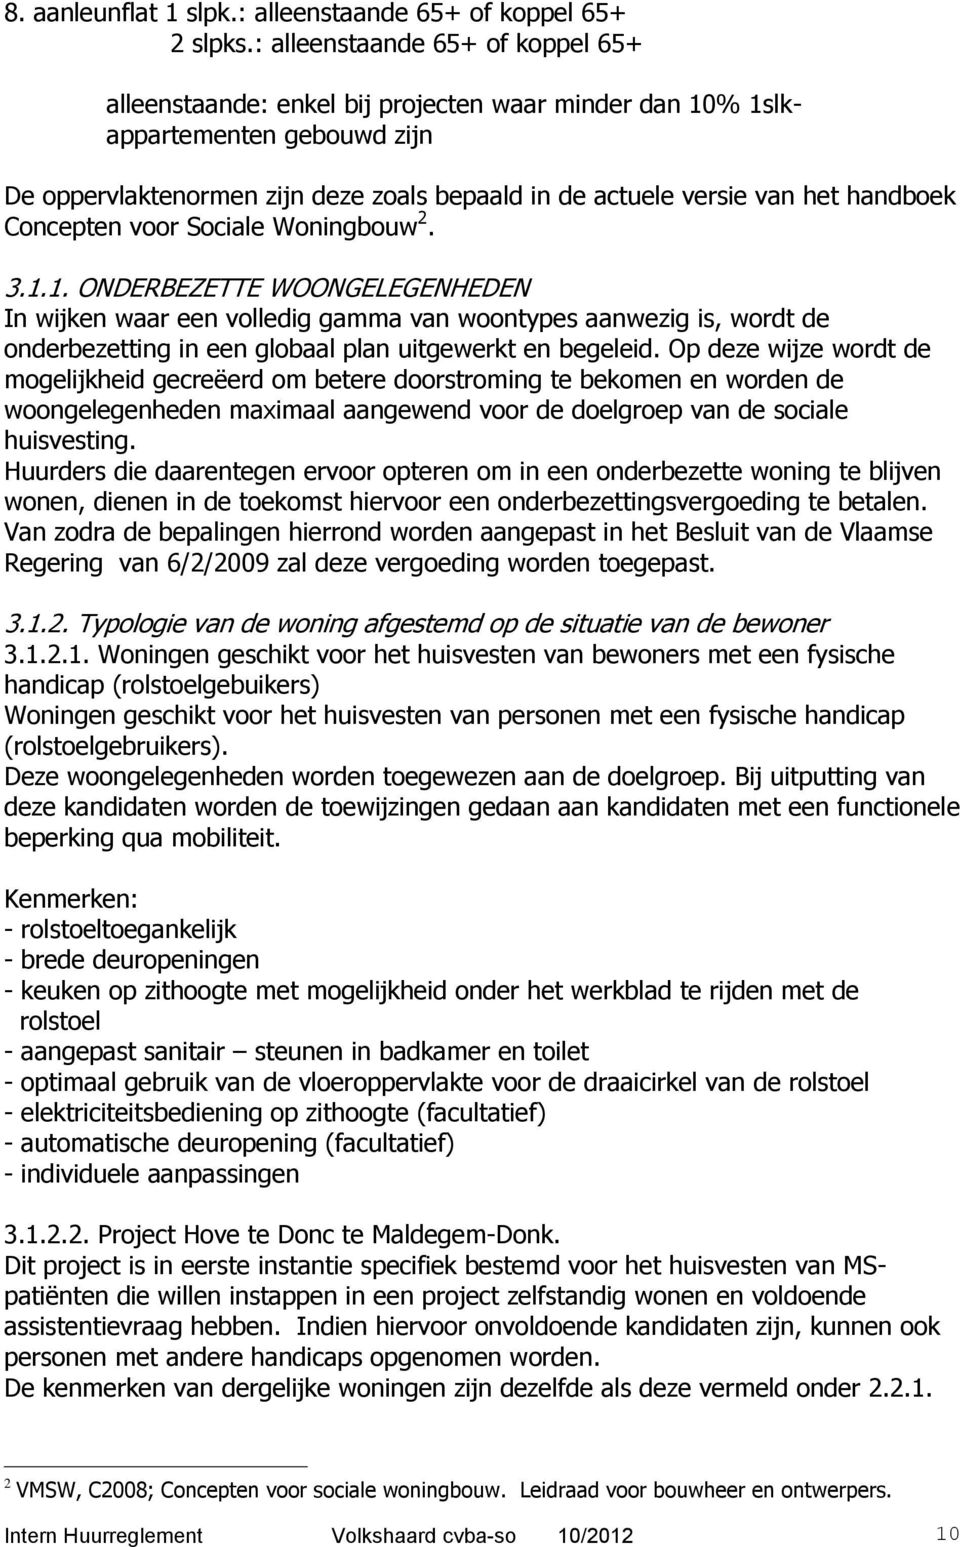 handboek Concepten voor Sociale Woningbouw 2. 3.1.